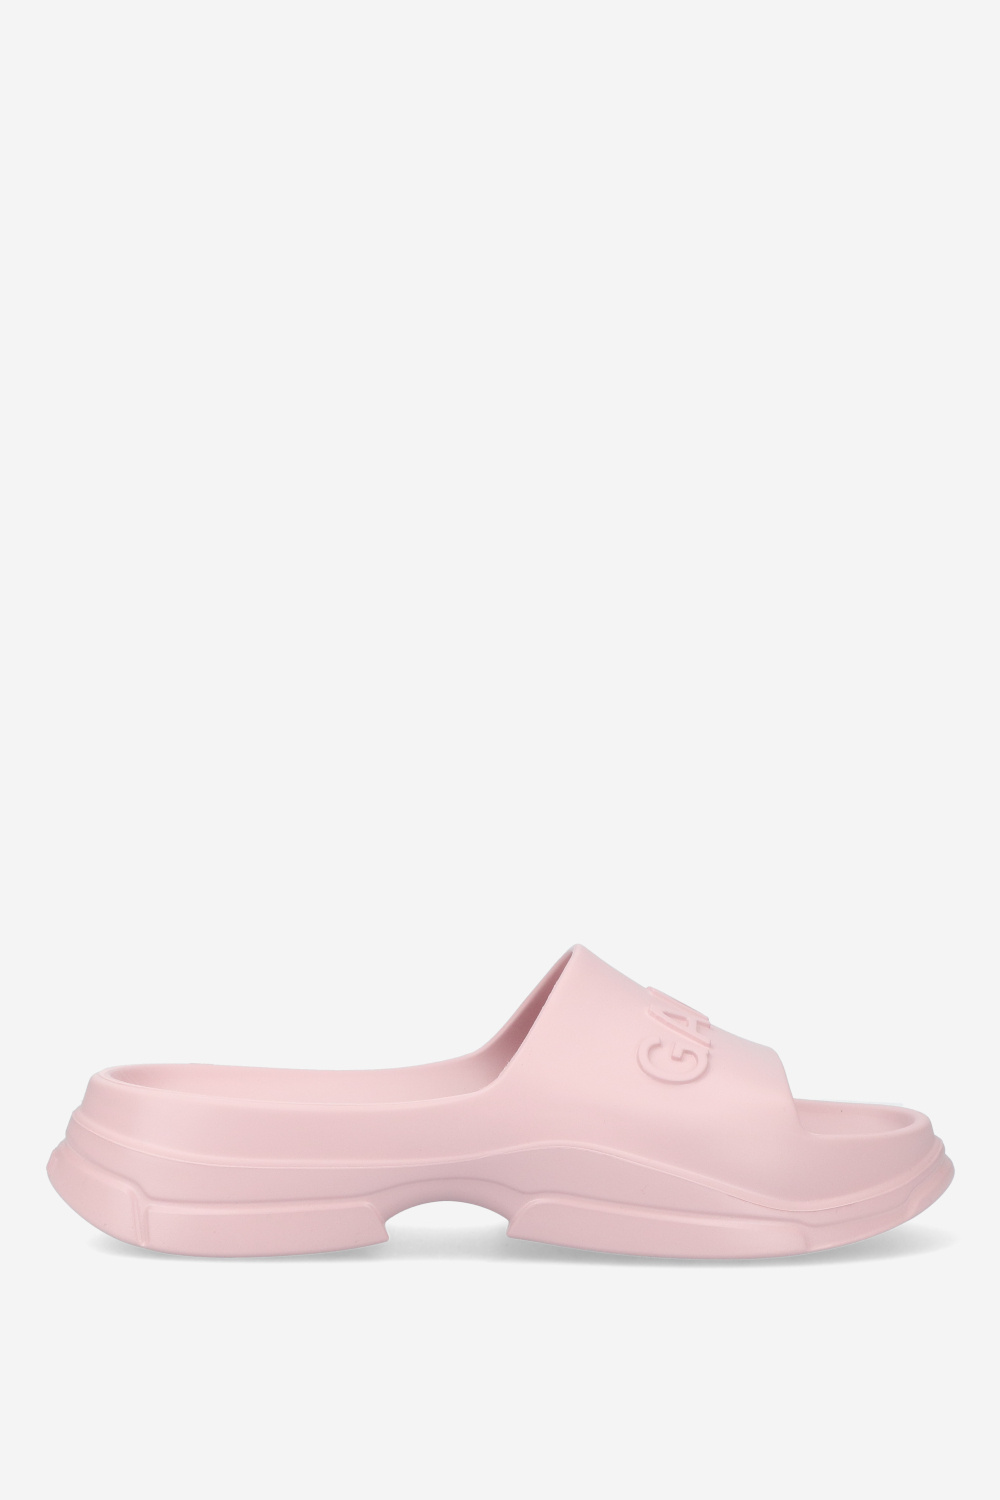 Ganni Sandals Pink